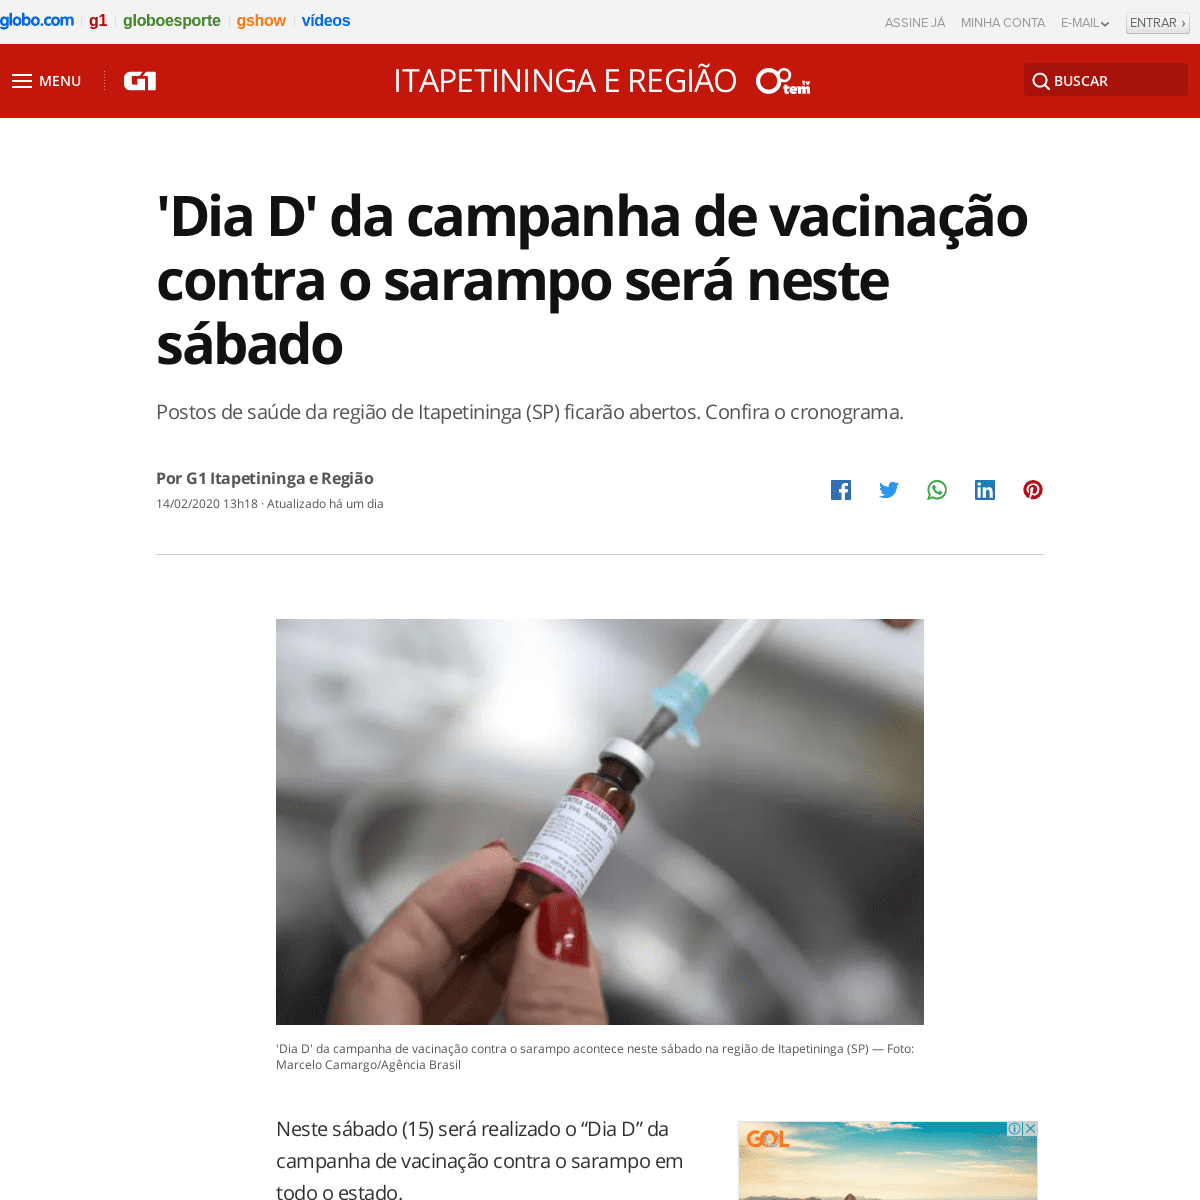 A complete backup of g1.globo.com/sp/itapetininga-regiao/noticia/2020/02/14/dia-d-da-campanha-de-vacinacao-contra-o-sarampo-sera